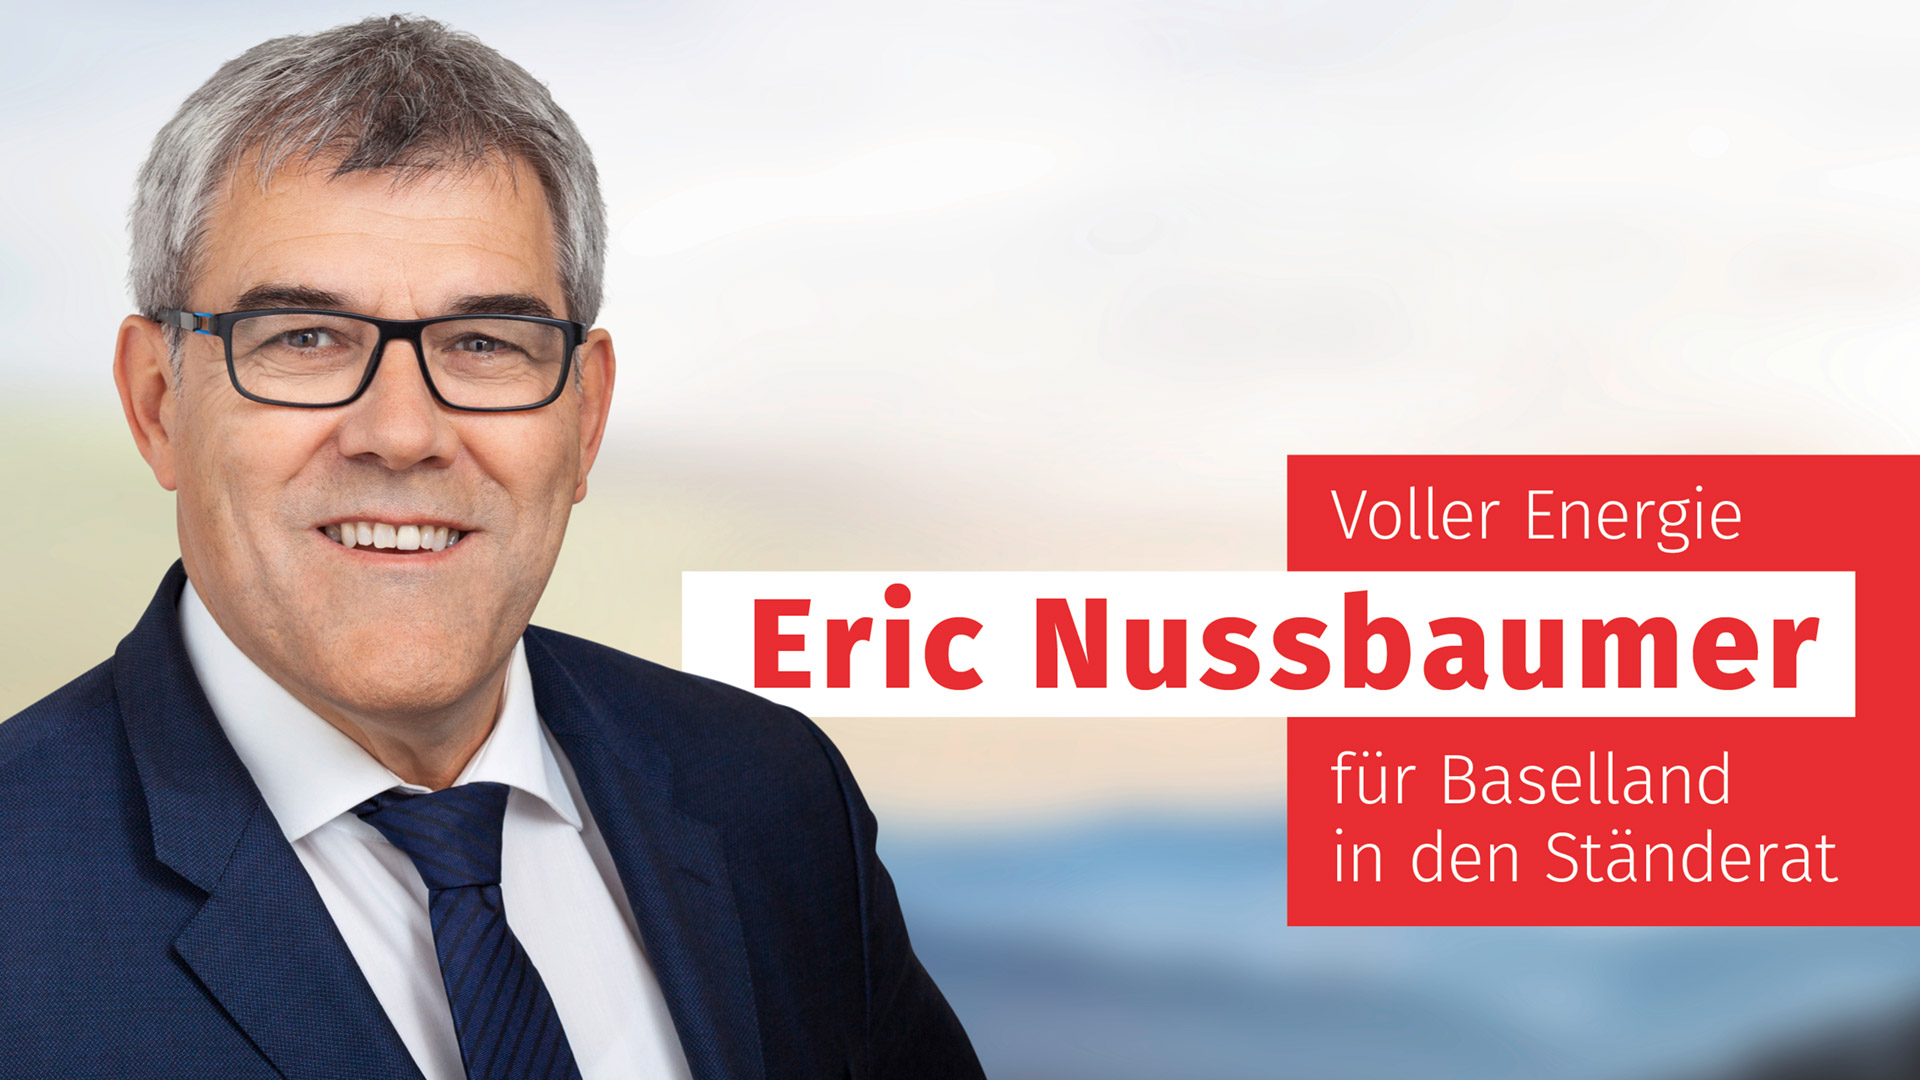 Voller Energie! Eric Nussbaumer für Baselland in den Ständerat